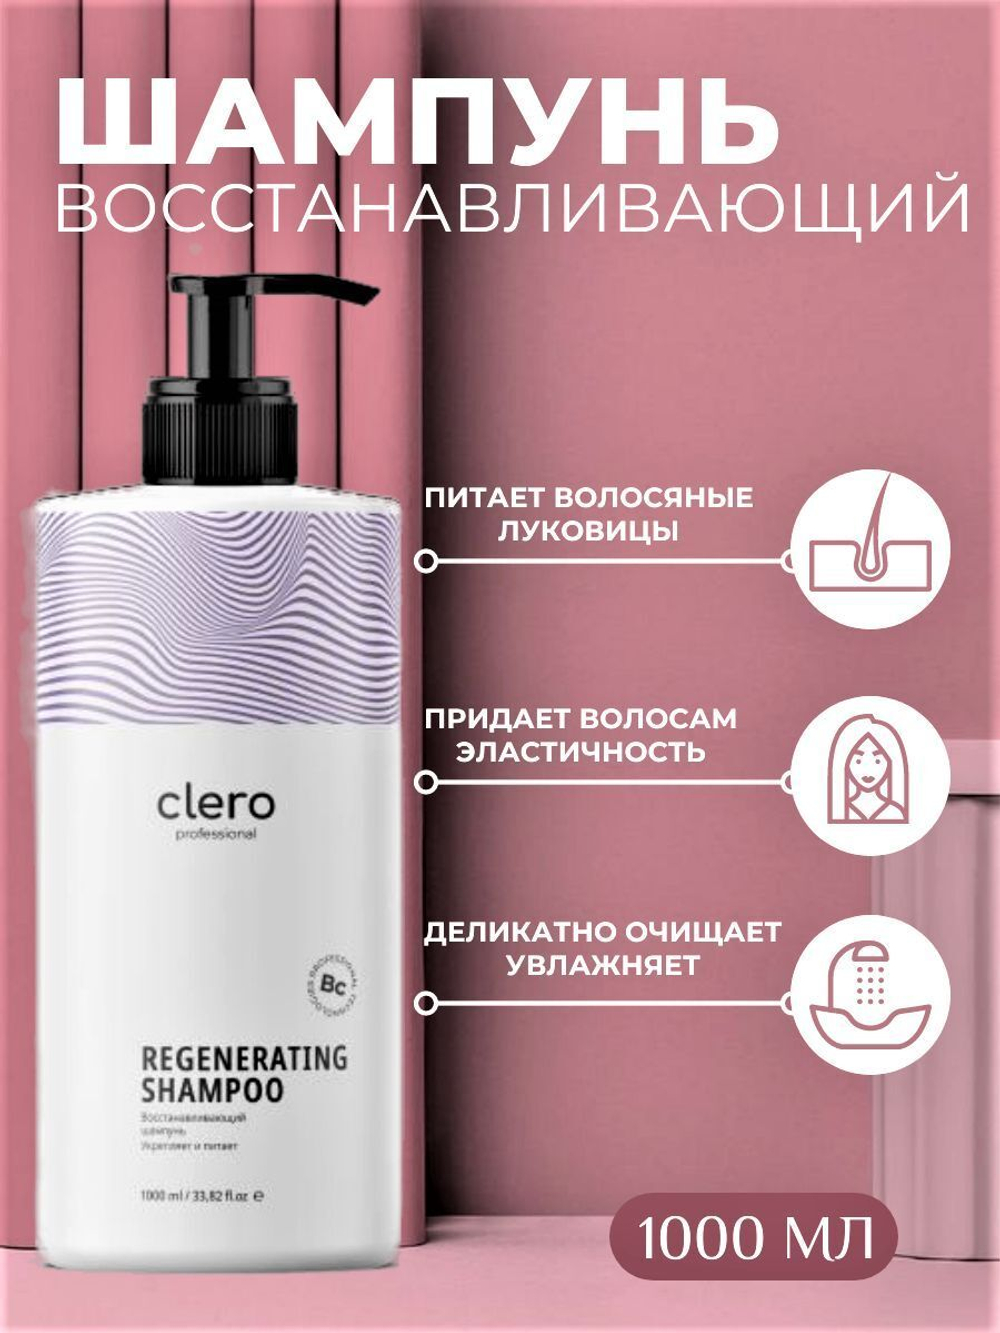 Шампунь для волос профессиональный Clero Pro, восстанавливающий, для сухих и поврежденных волос 1000 мл.